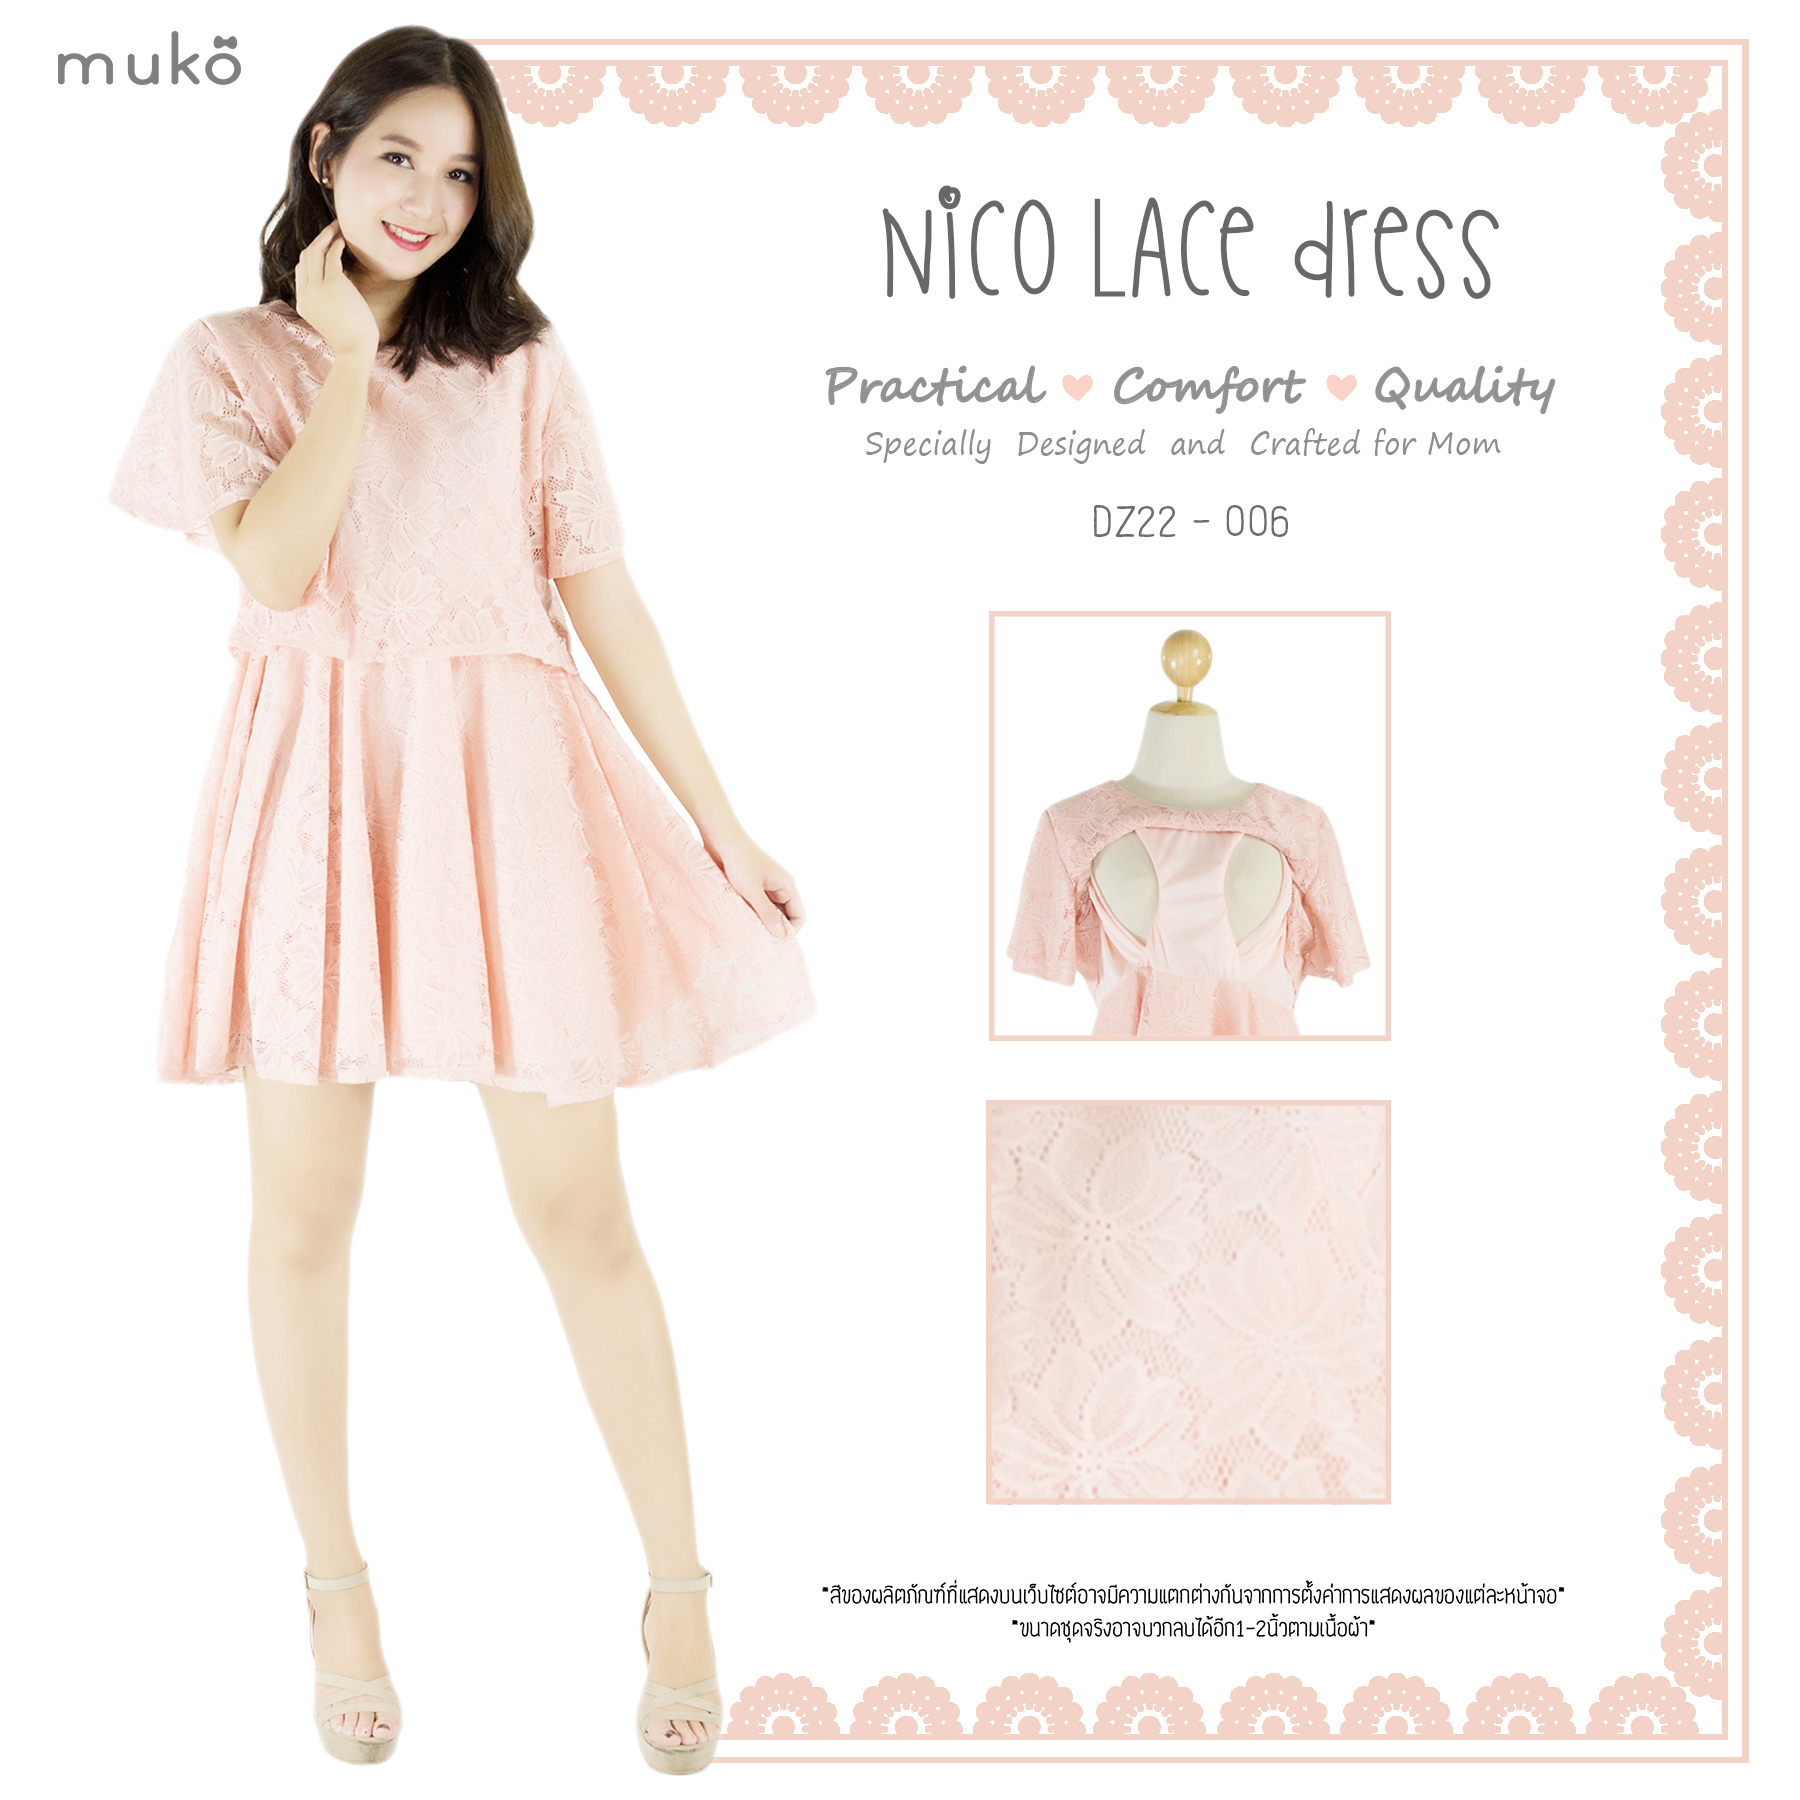 Muko Nico Lace Dress เดรสคลุมท้อง เปิดให้นม DZ22-006 โอรส